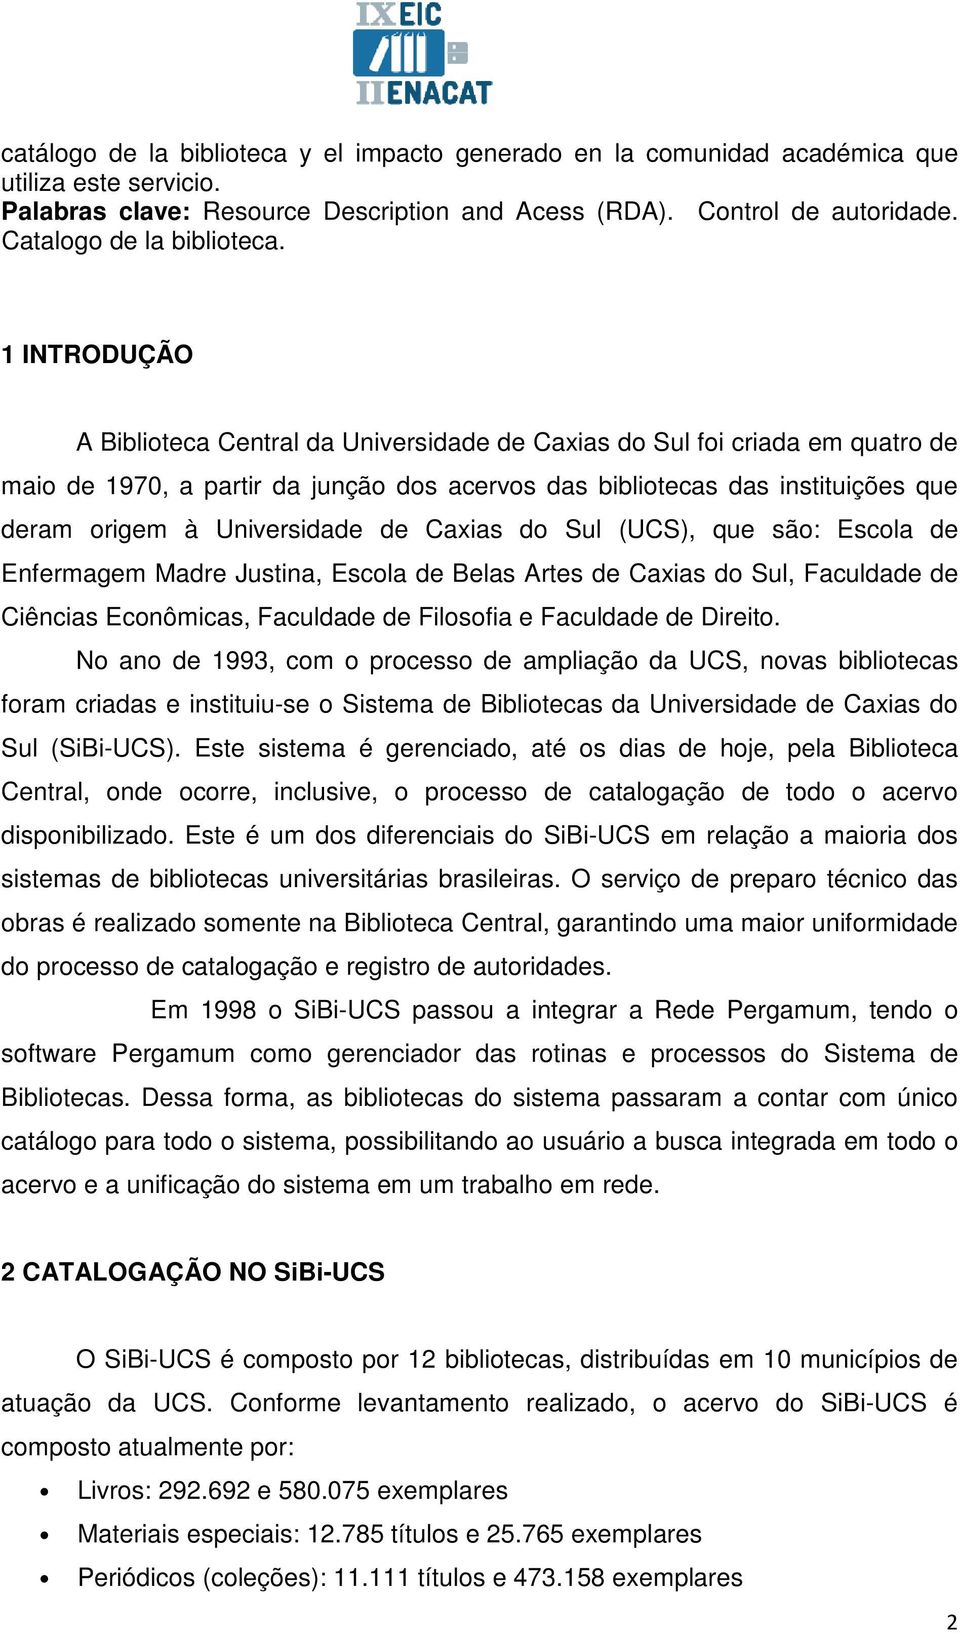 1 INTRODUÇÃO A Biblioteca Central da Universidade de Caxias do Sul foi criada em quatro de maio de 1970, a partir da junção dos acervos das bibliotecas das instituições que deram origem à